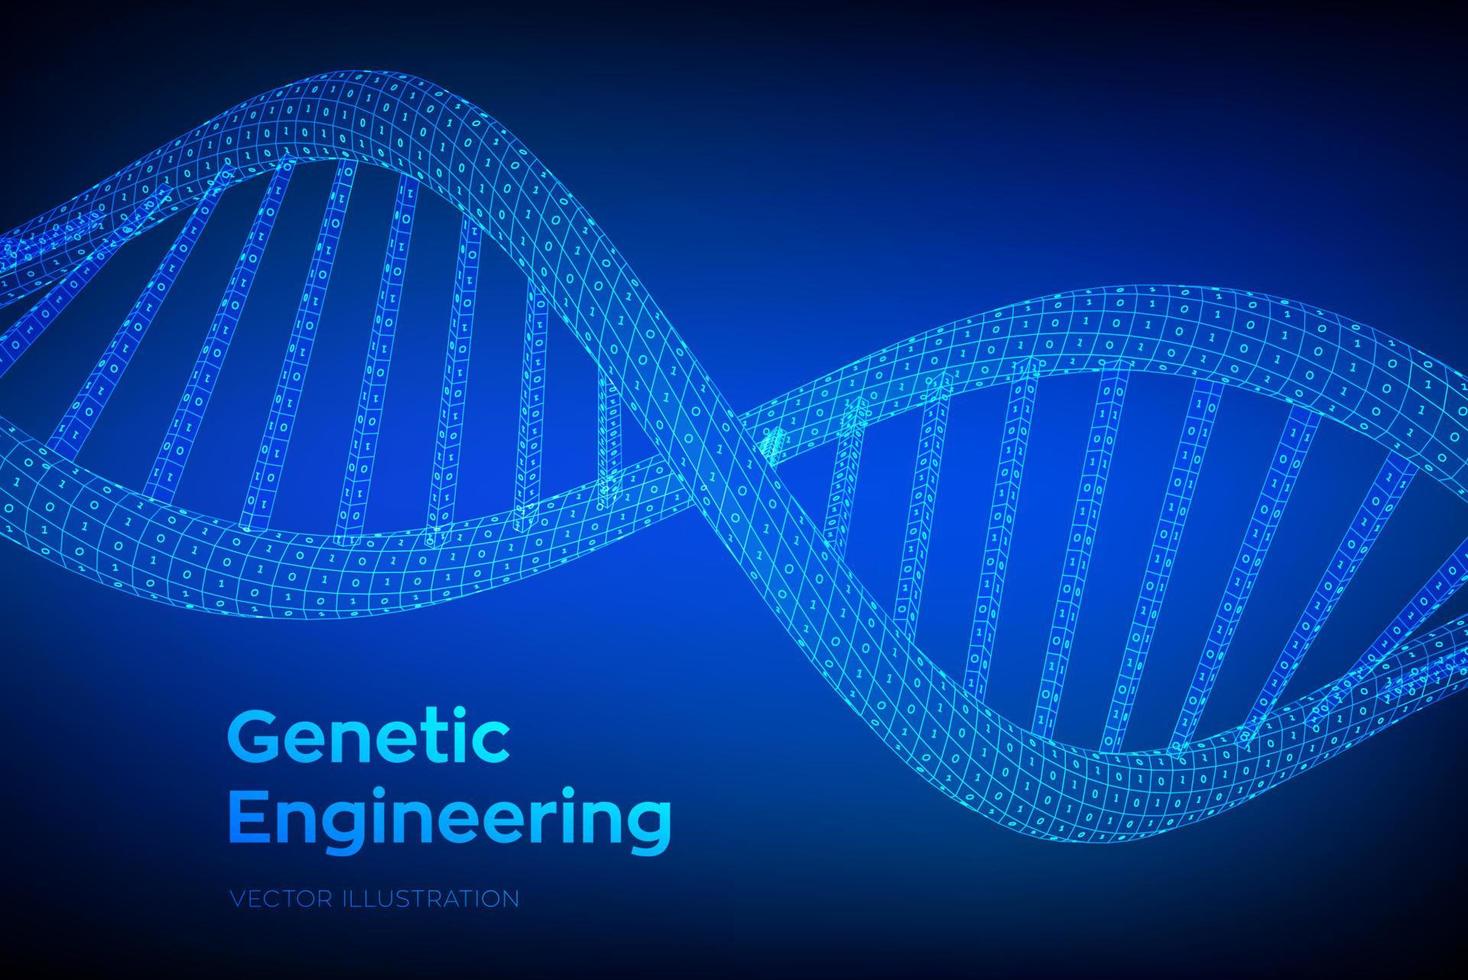 DNA-Sequenz. konzept binärcode menschliches genom. drahtgitter digitale dna-moleküle strukturieren masche. editierbare vorlage für künstliche intelegenz-dna-code. Wissenschafts- und Technologiekonzept. Vektor-Illustration. vektor